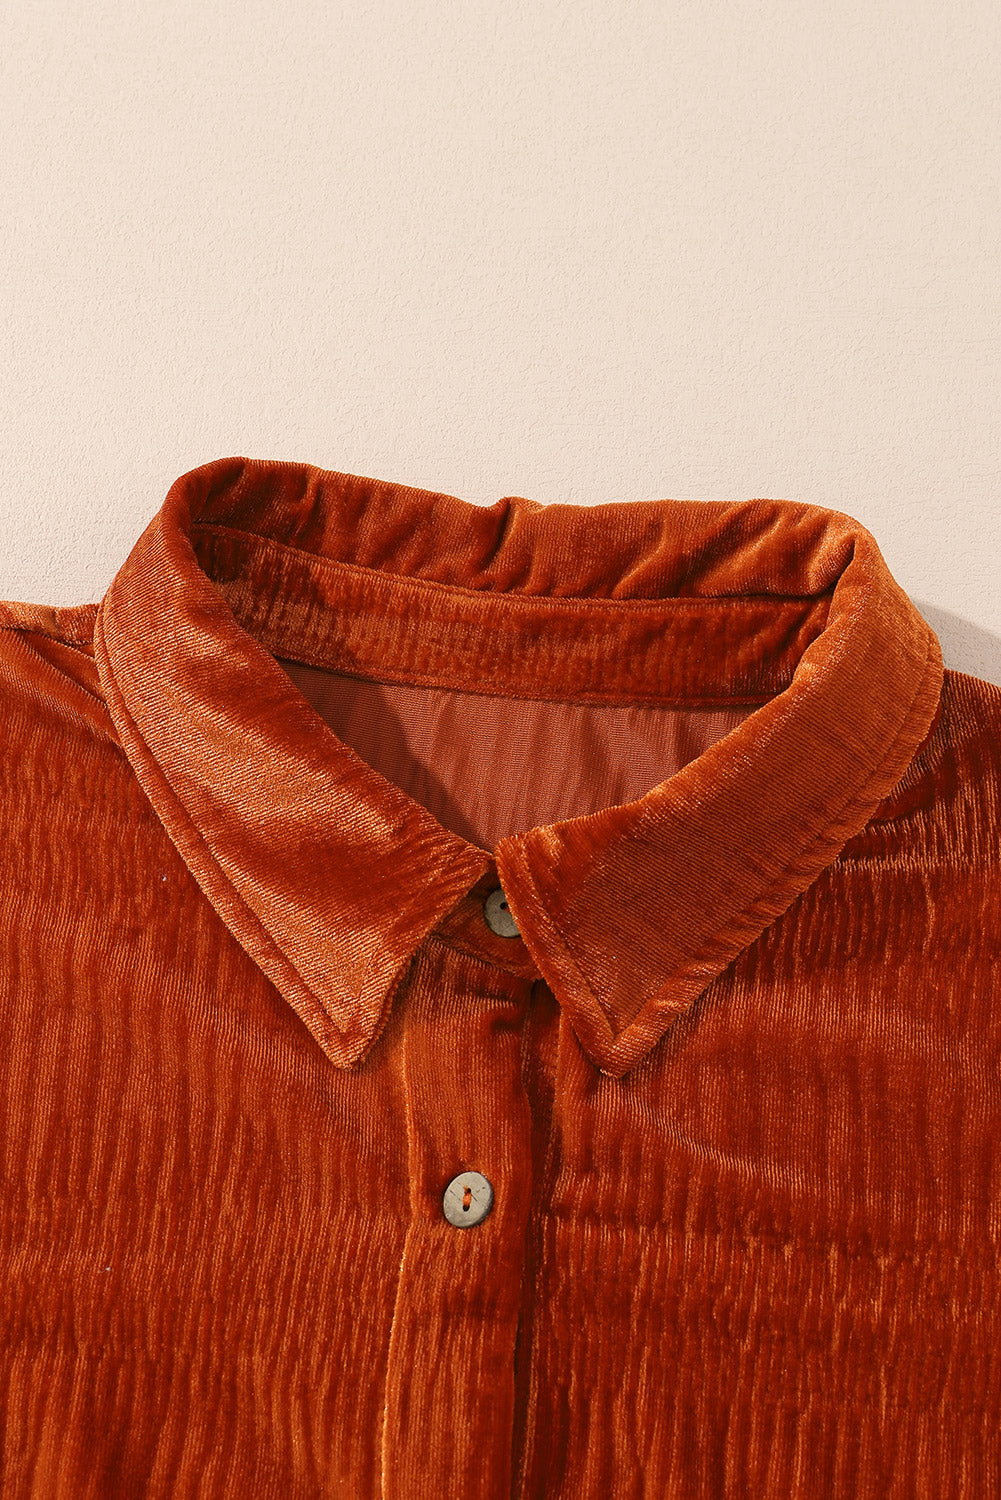 Rjava enobarvna teksturirana žametna srajca z gumbi